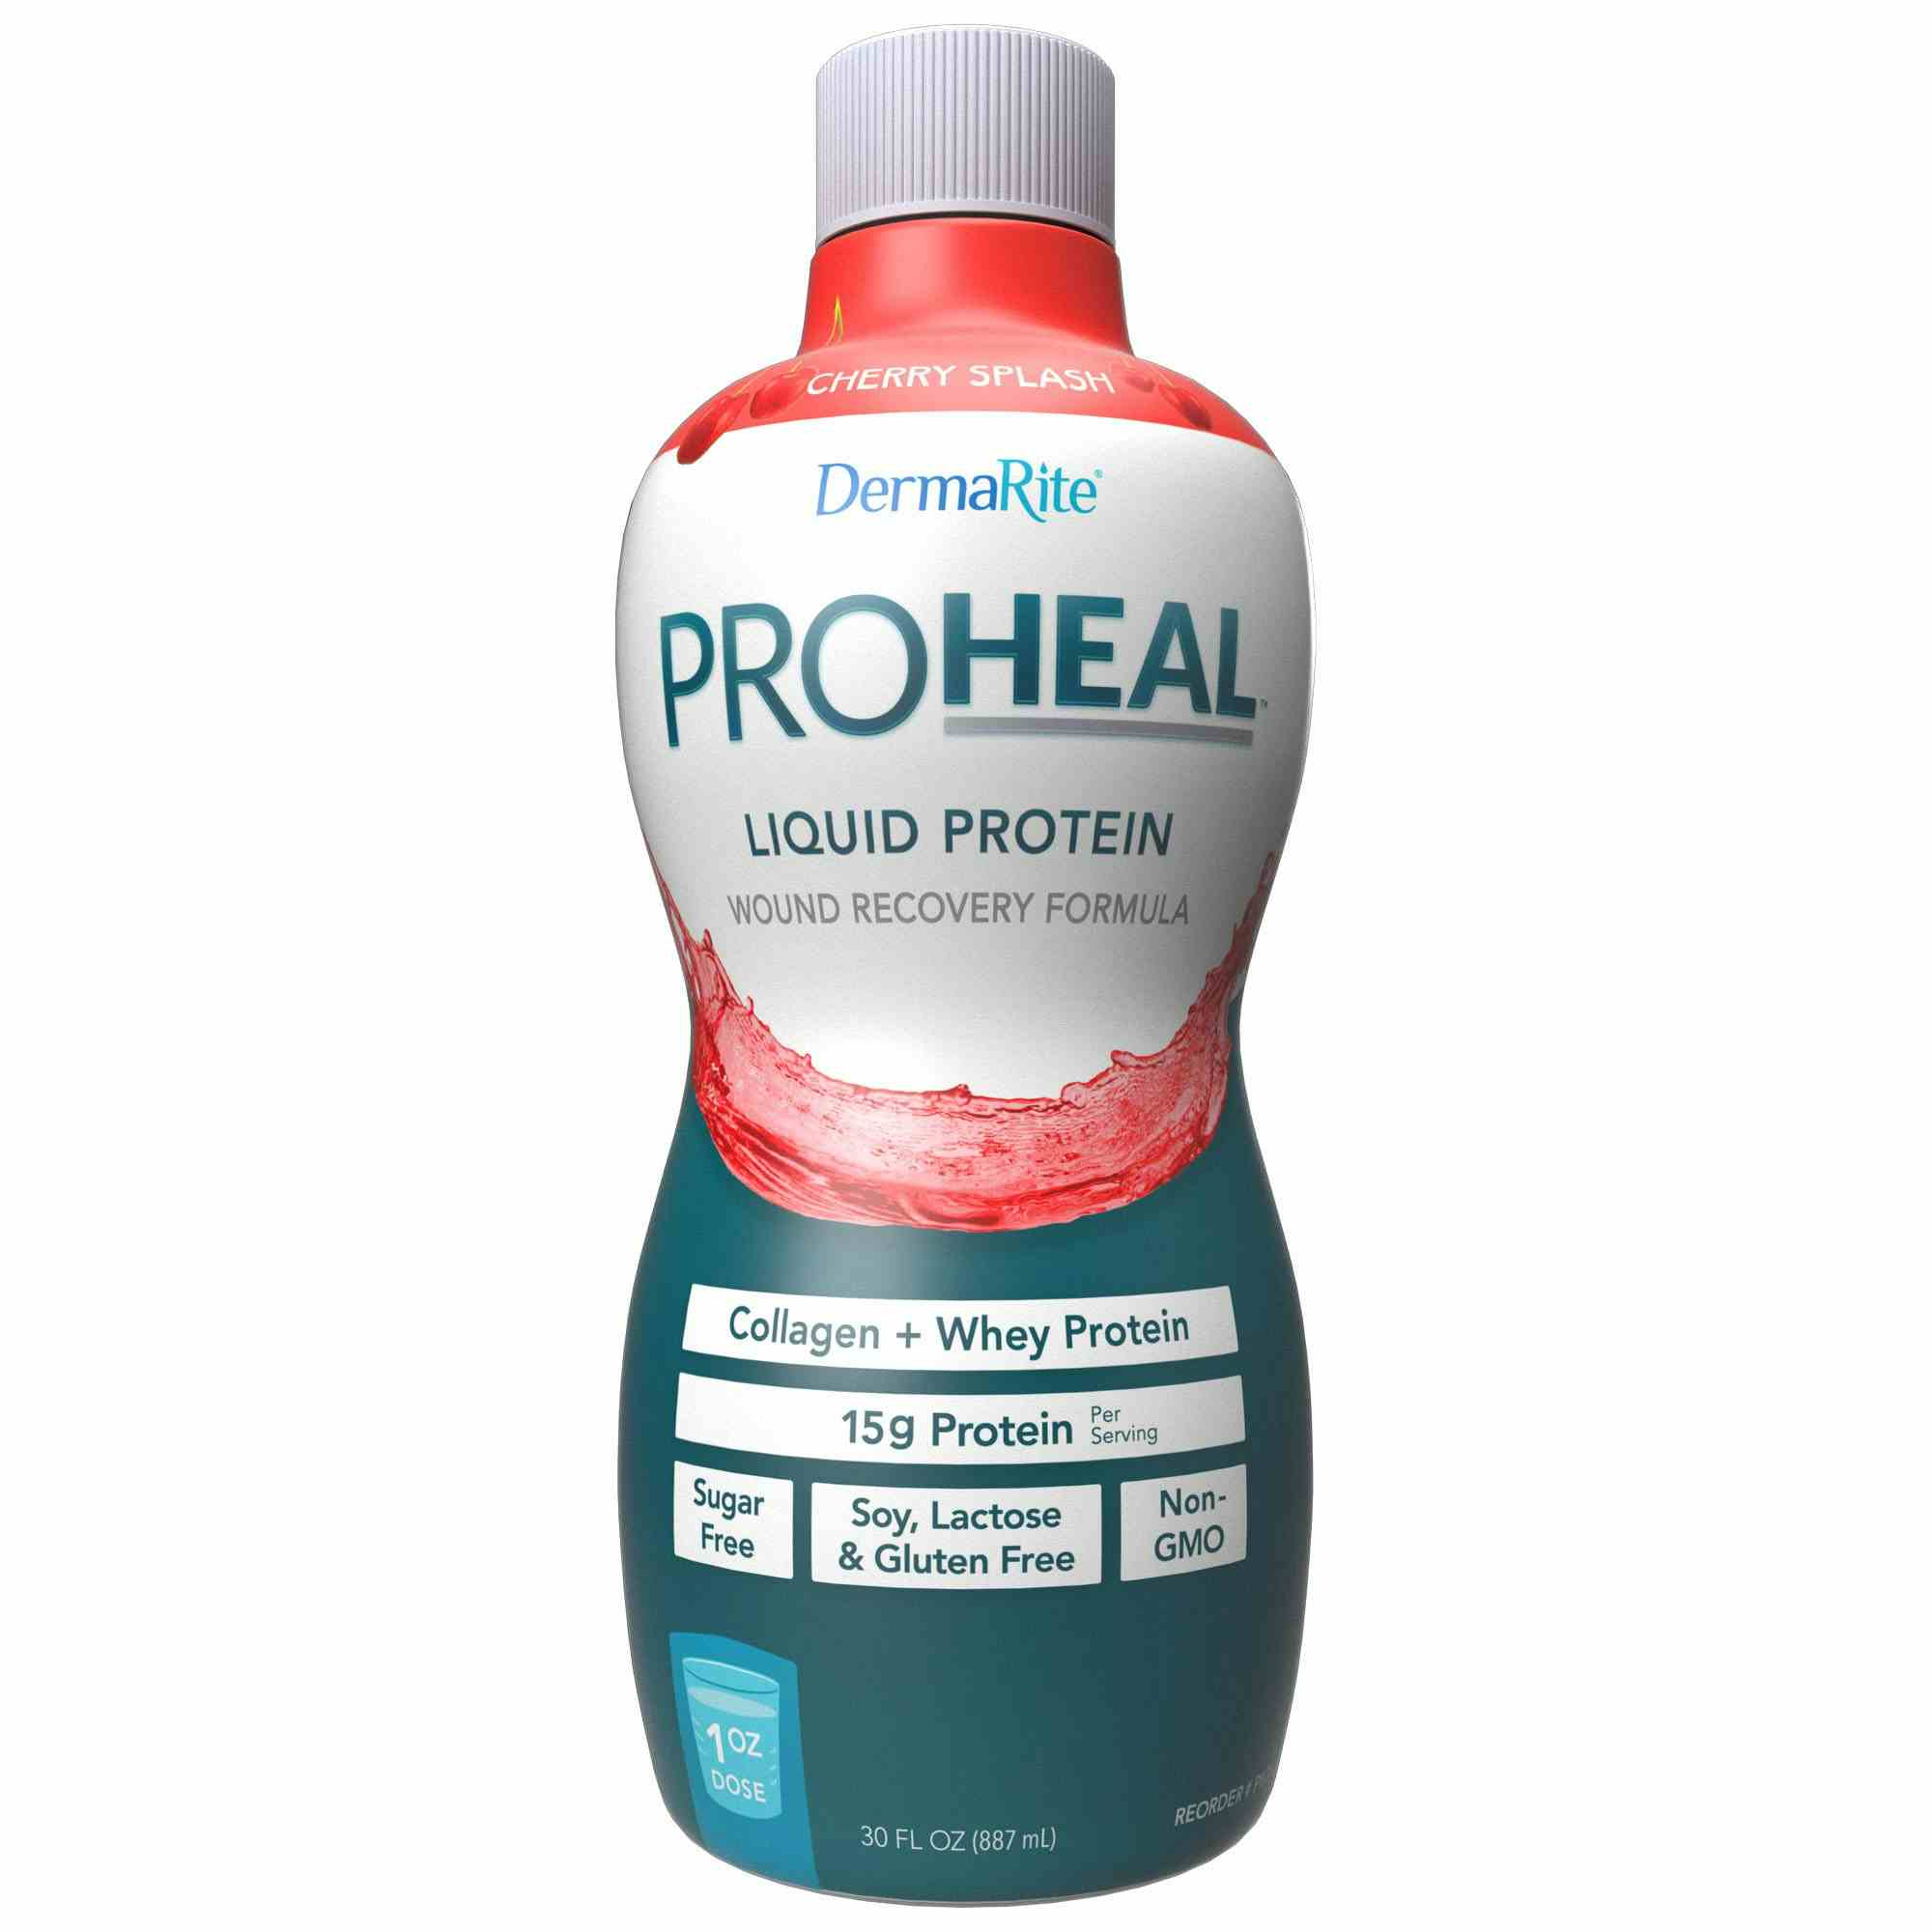 DermaRite ProHeal Liquid Protein Wound Recovery Formula, Cherry Splash, 30 oz.